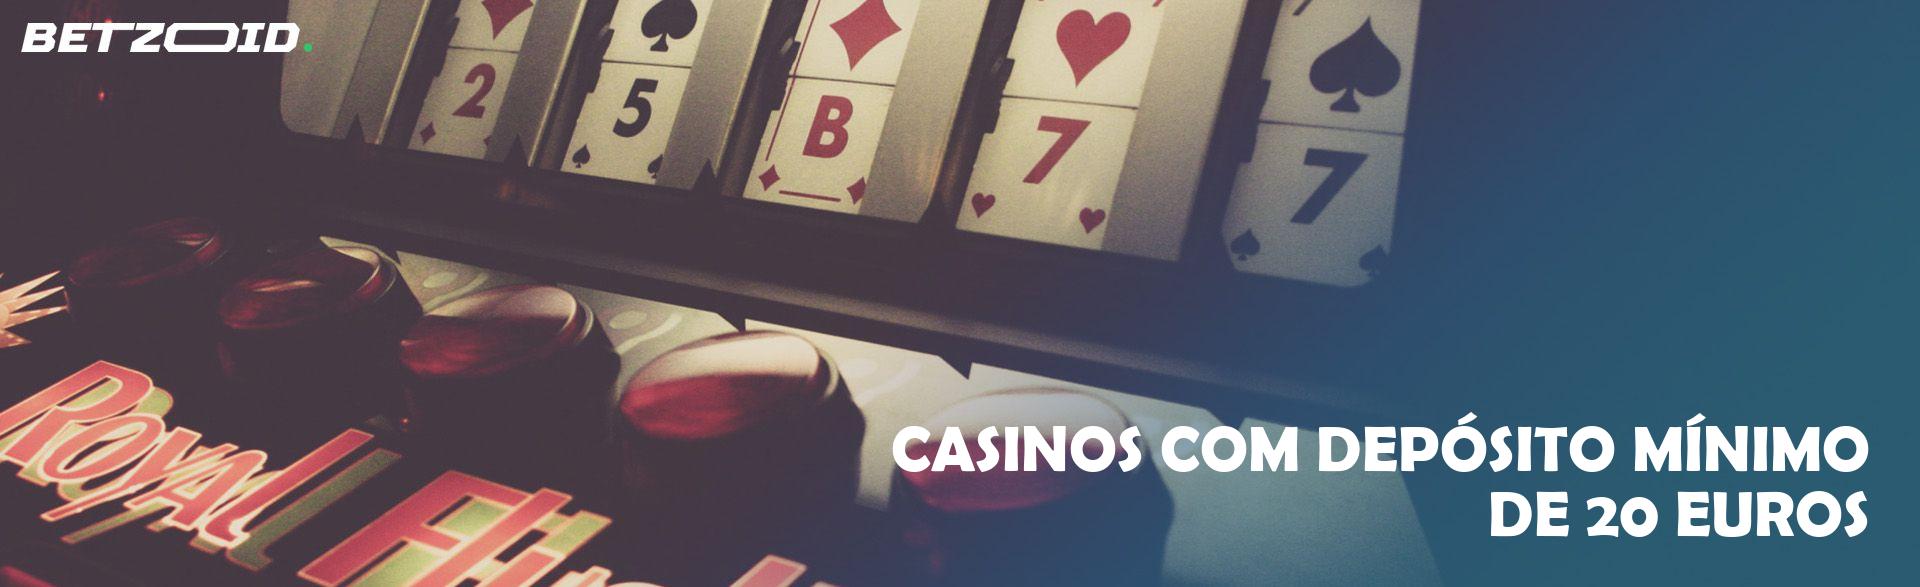 Casinos com Depósito Mínimo de 20 Euros.